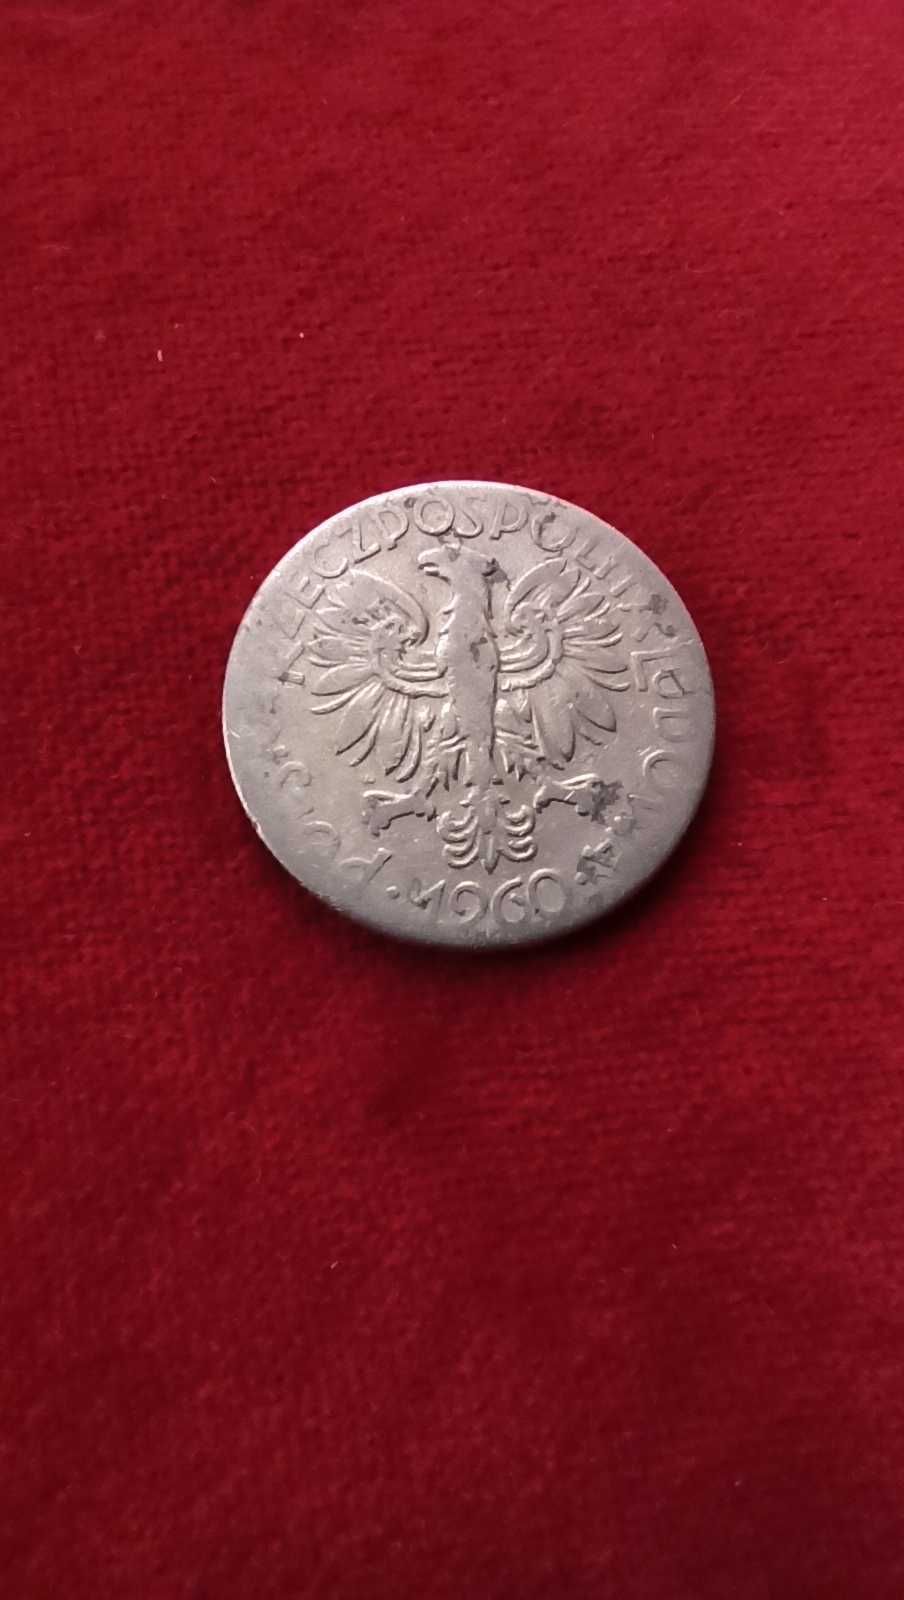 PRL, Moneta 5 złotych Rybak 1960r